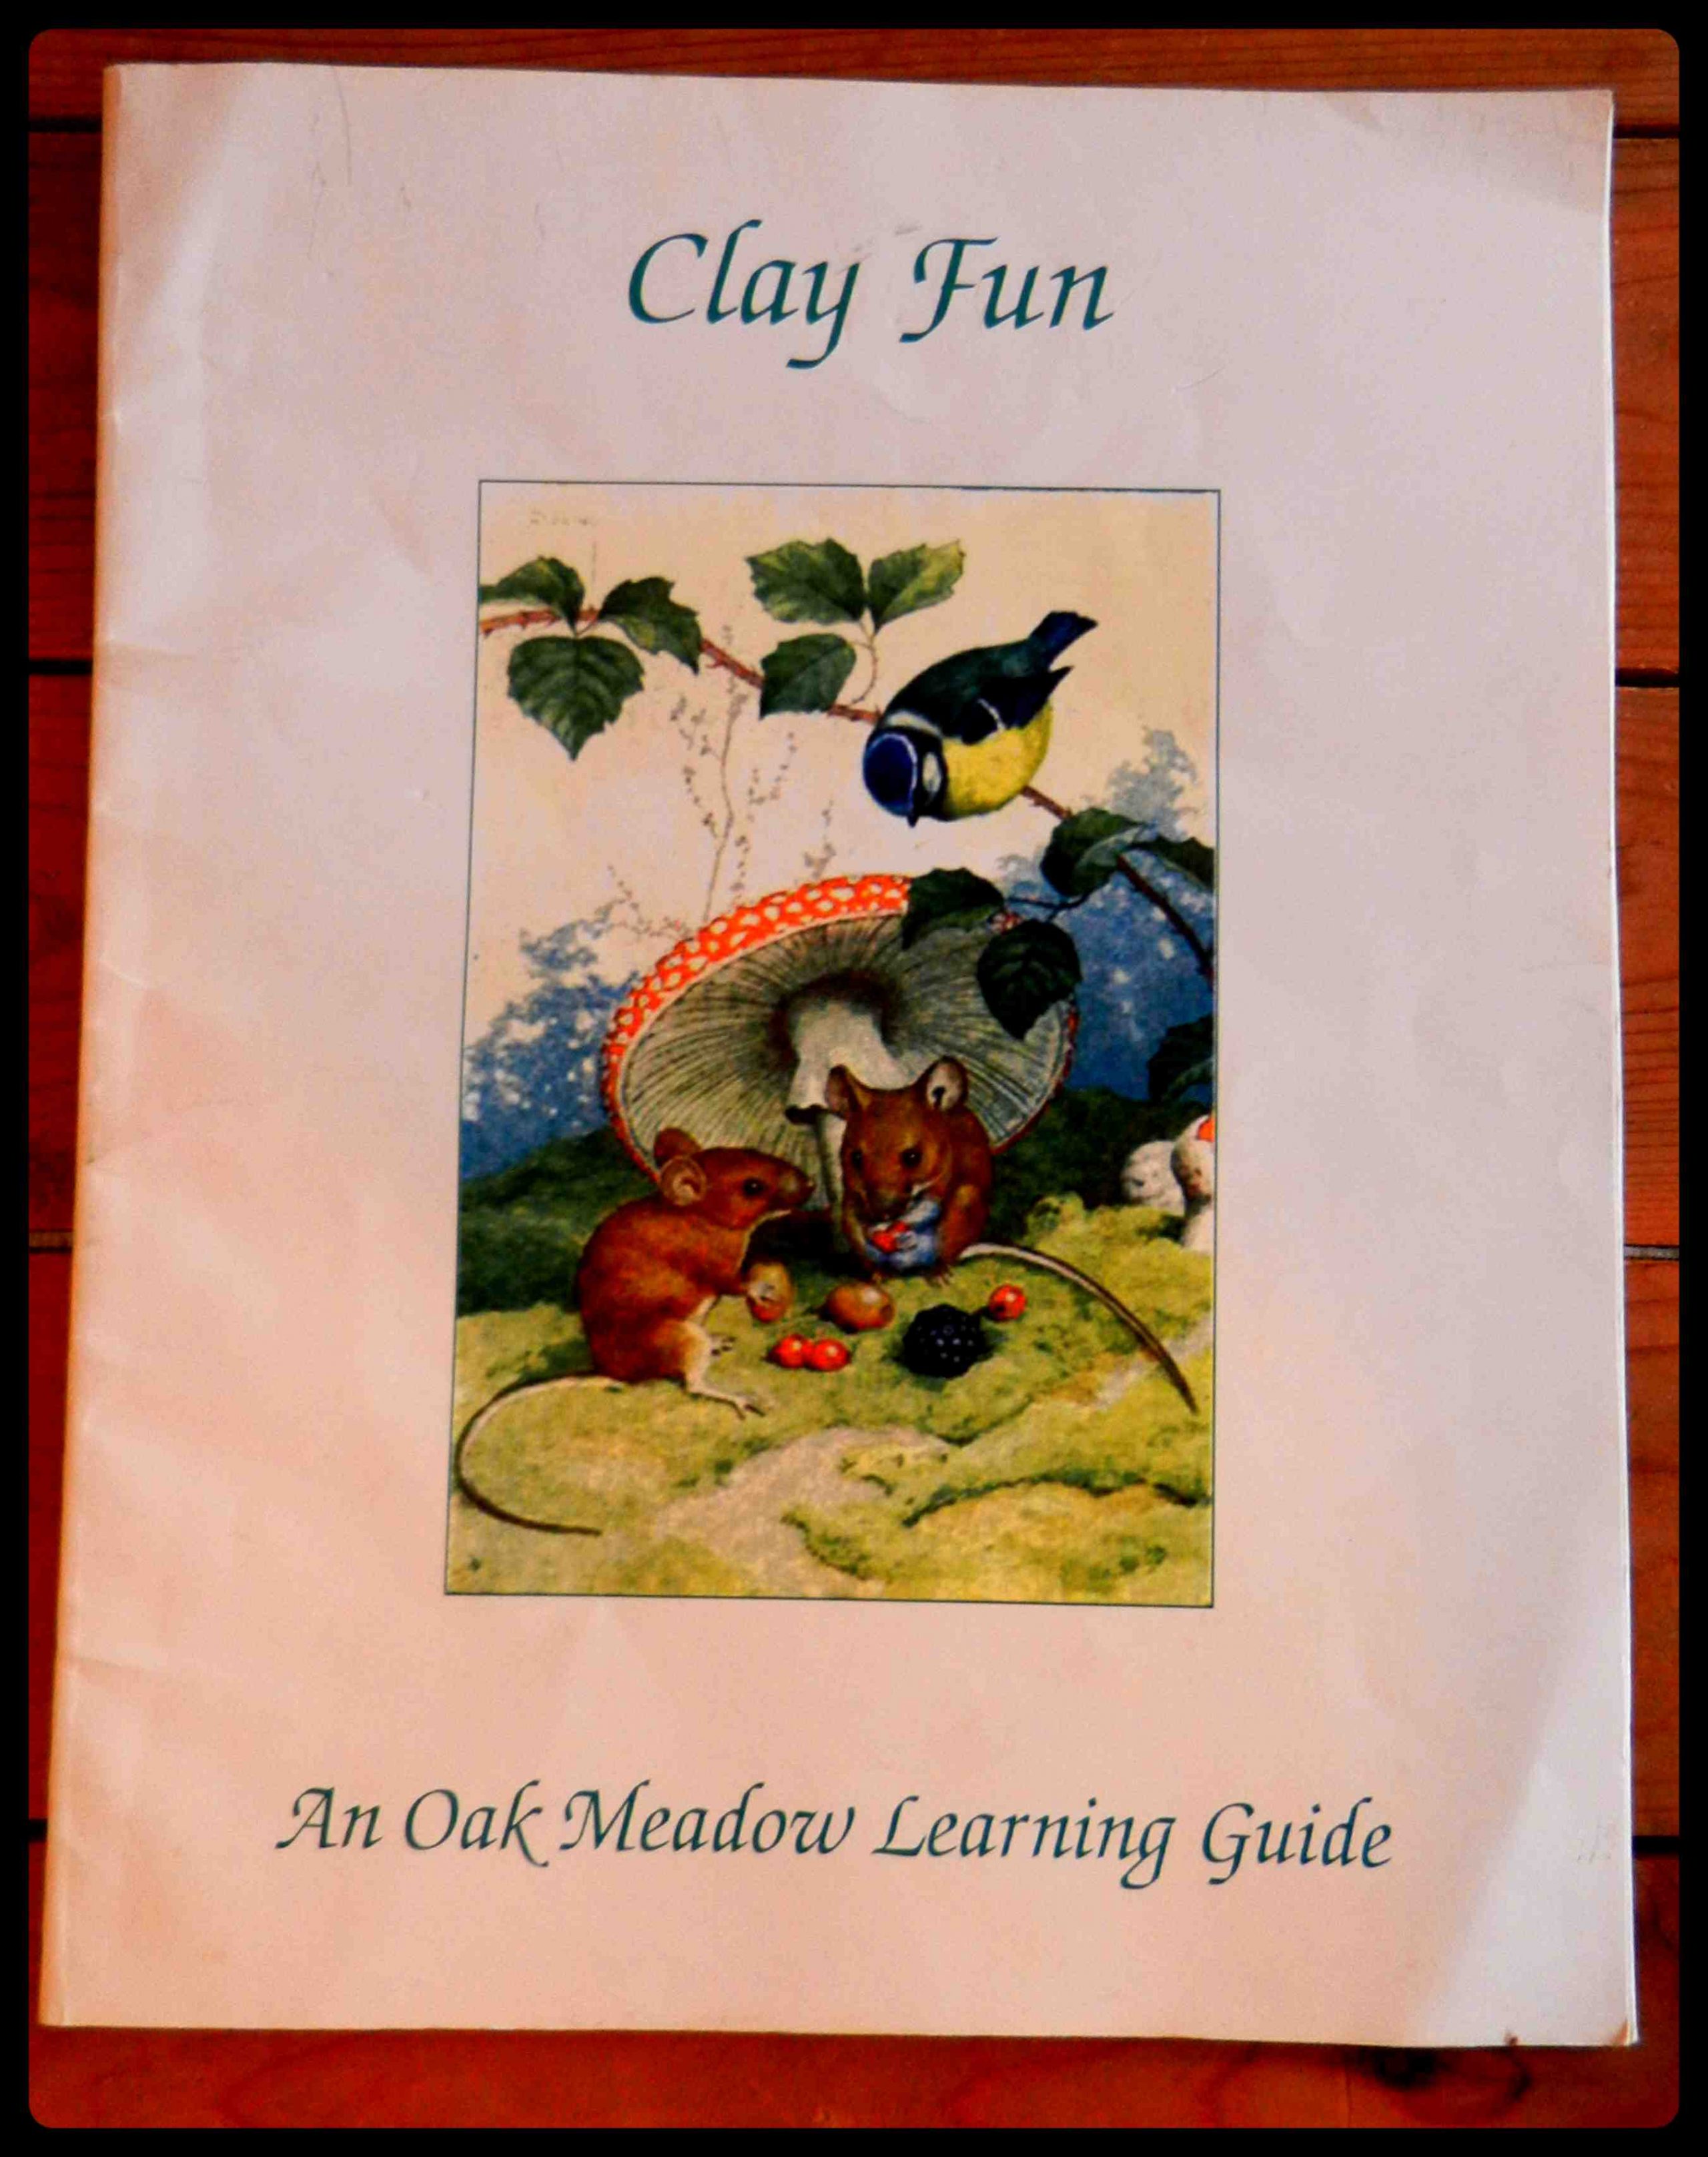 Clay Fun Art by Oak Meadow – My Review